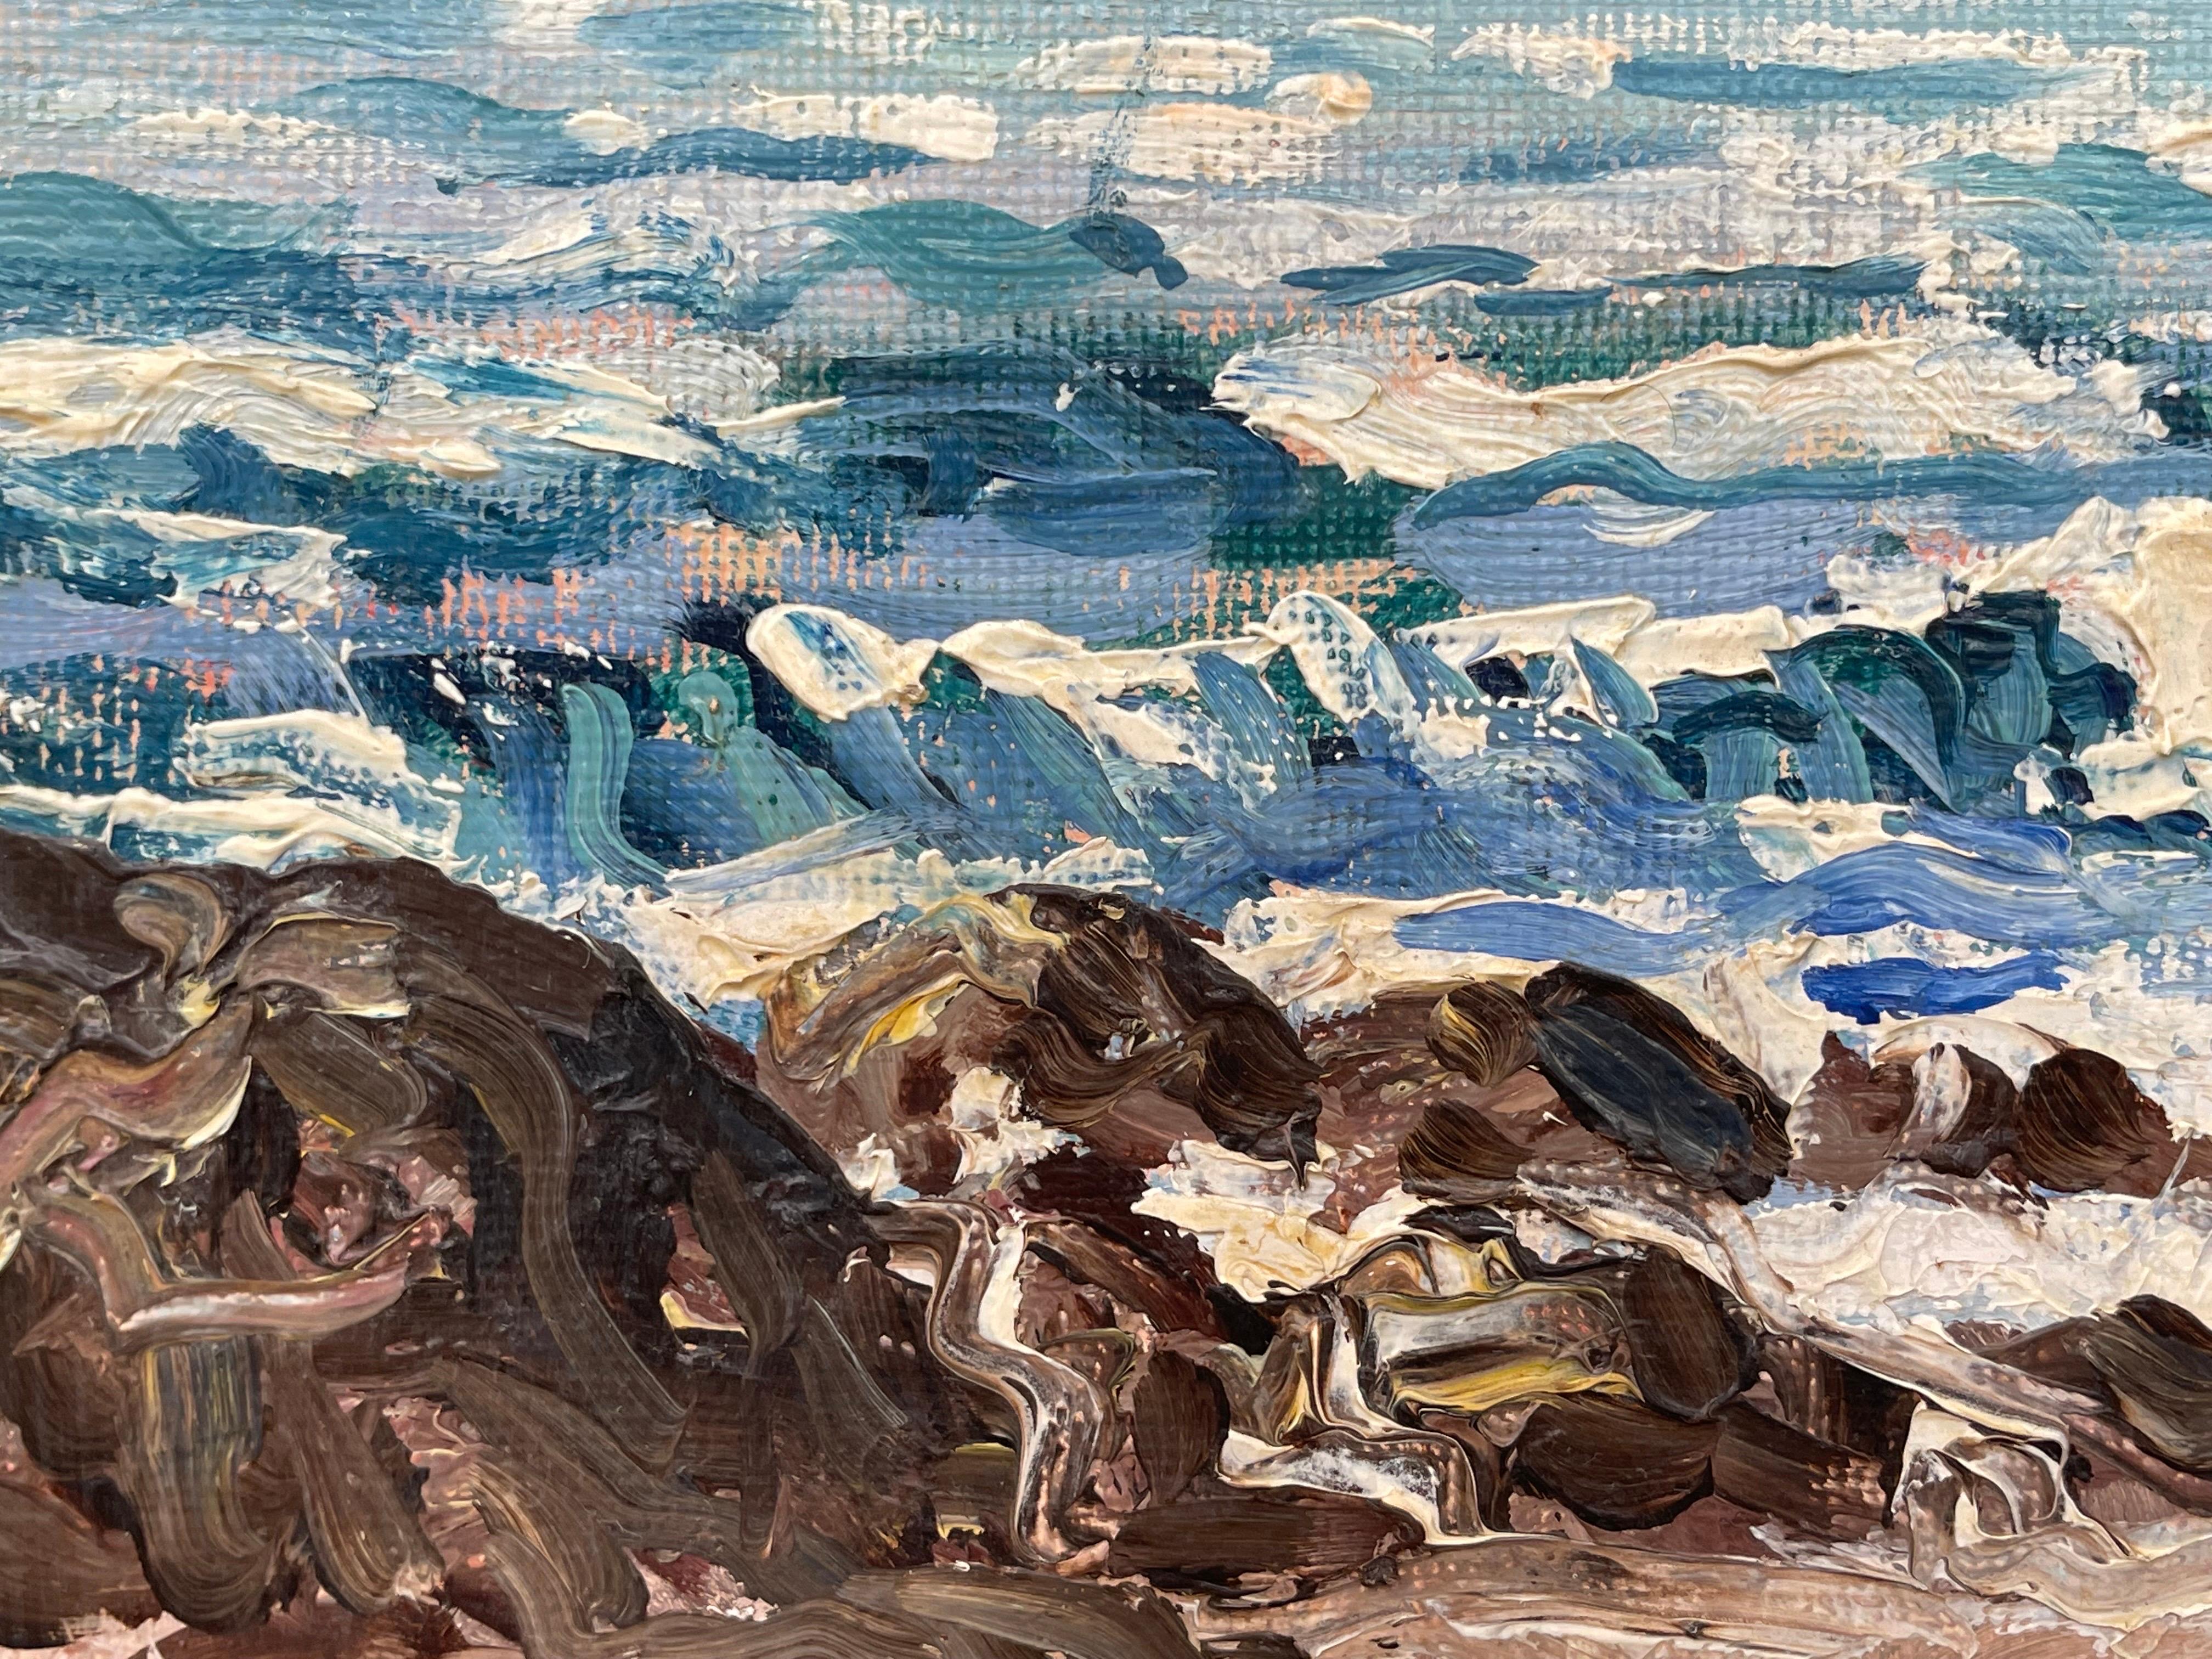 Peinture à l'huile originale d'une scène de plage avec des personnages à Fairhead, Irlande, par l'artiste irlandais moderne William Henry Burns (1924-1995).

L'œuvre d'art mesure 42 x 20 pouces 

William Henry Burns (1924-1995) était un peintre